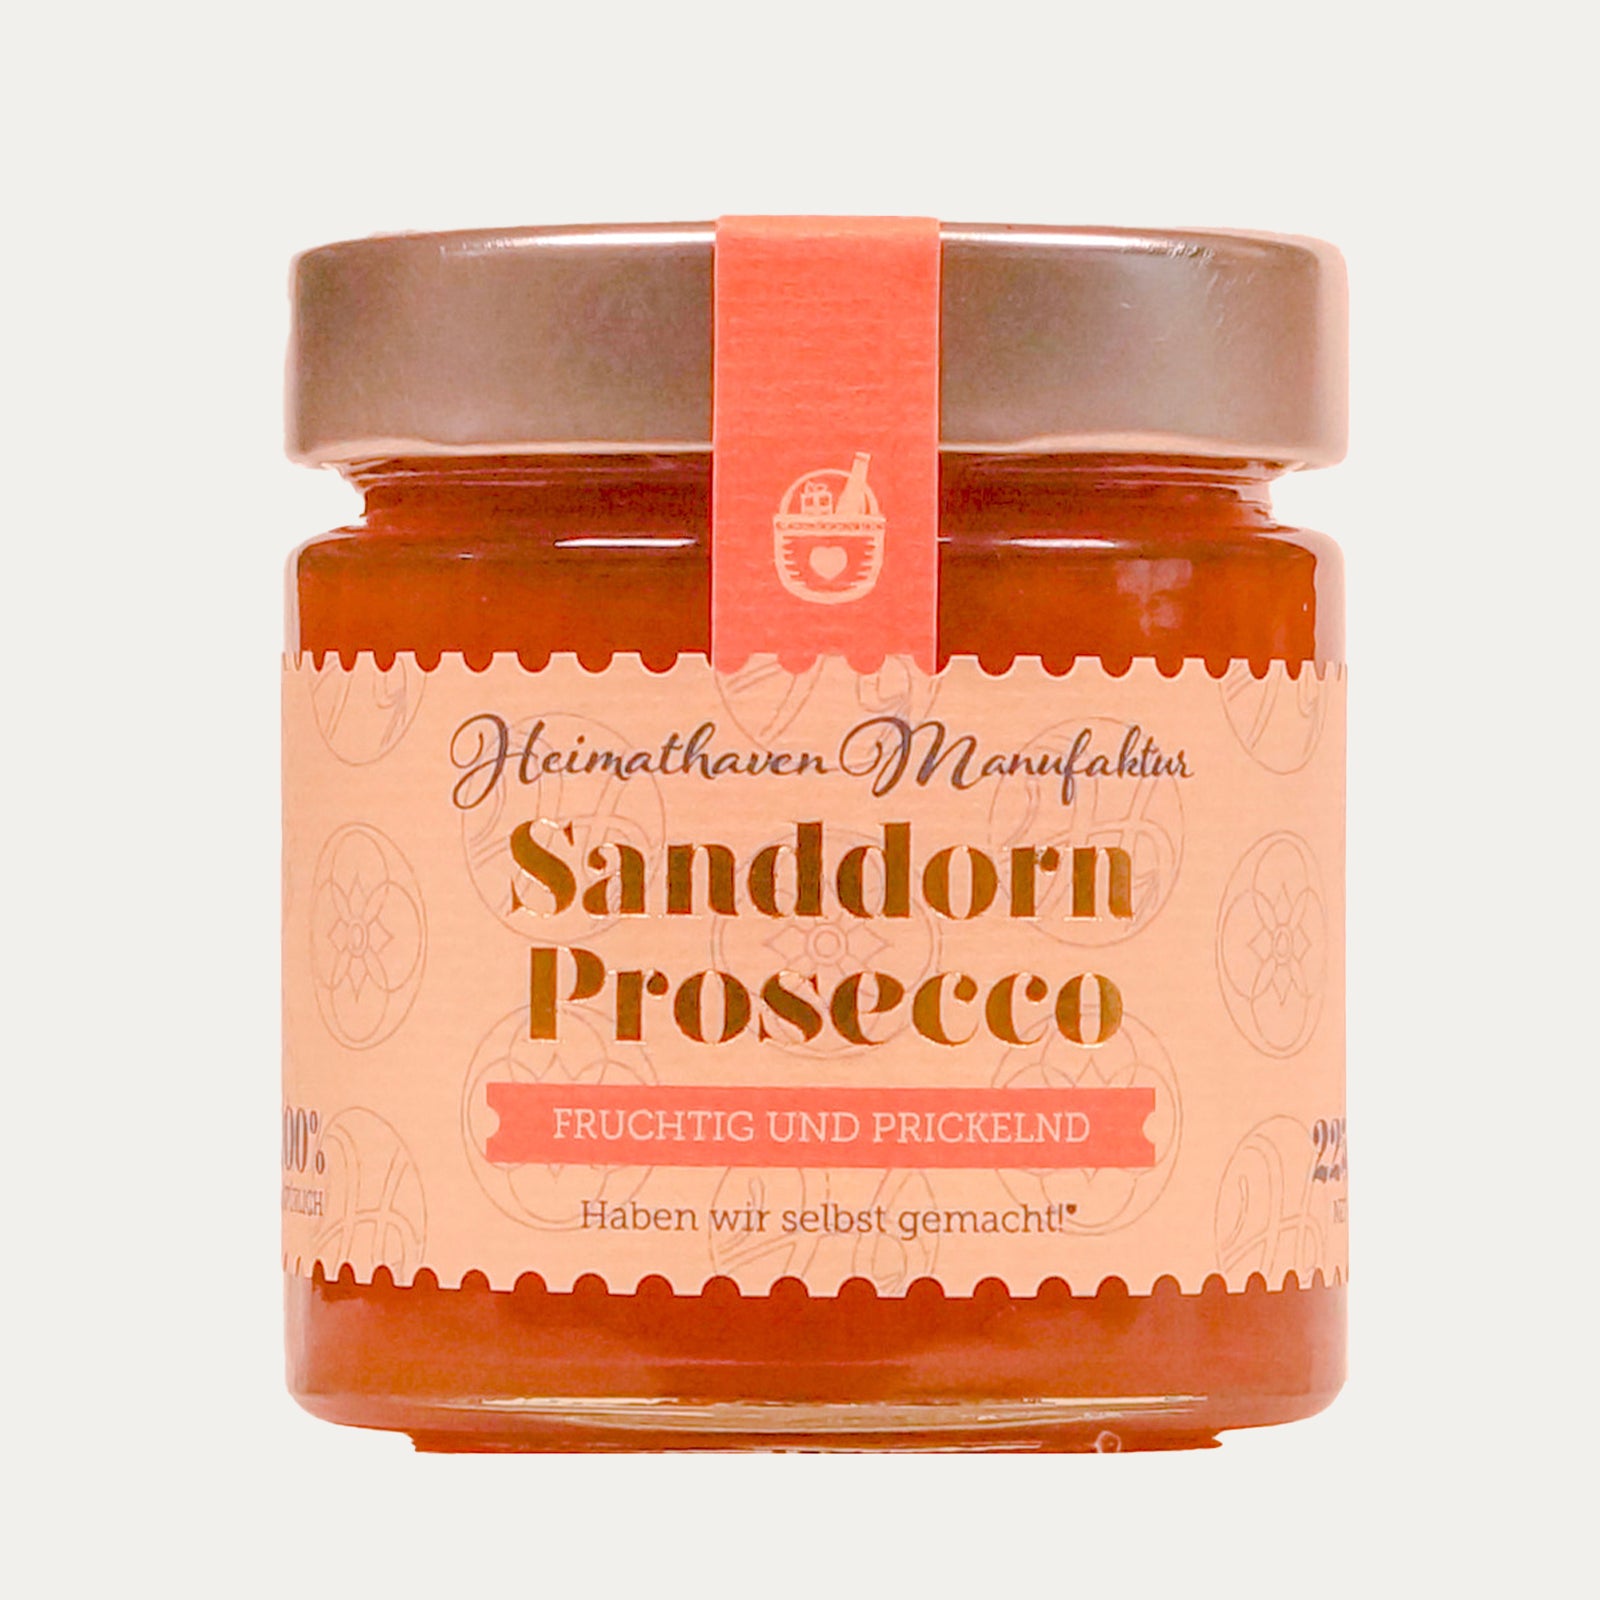 Sanddorn Prosecco Fruchtaufstrich - Vegan